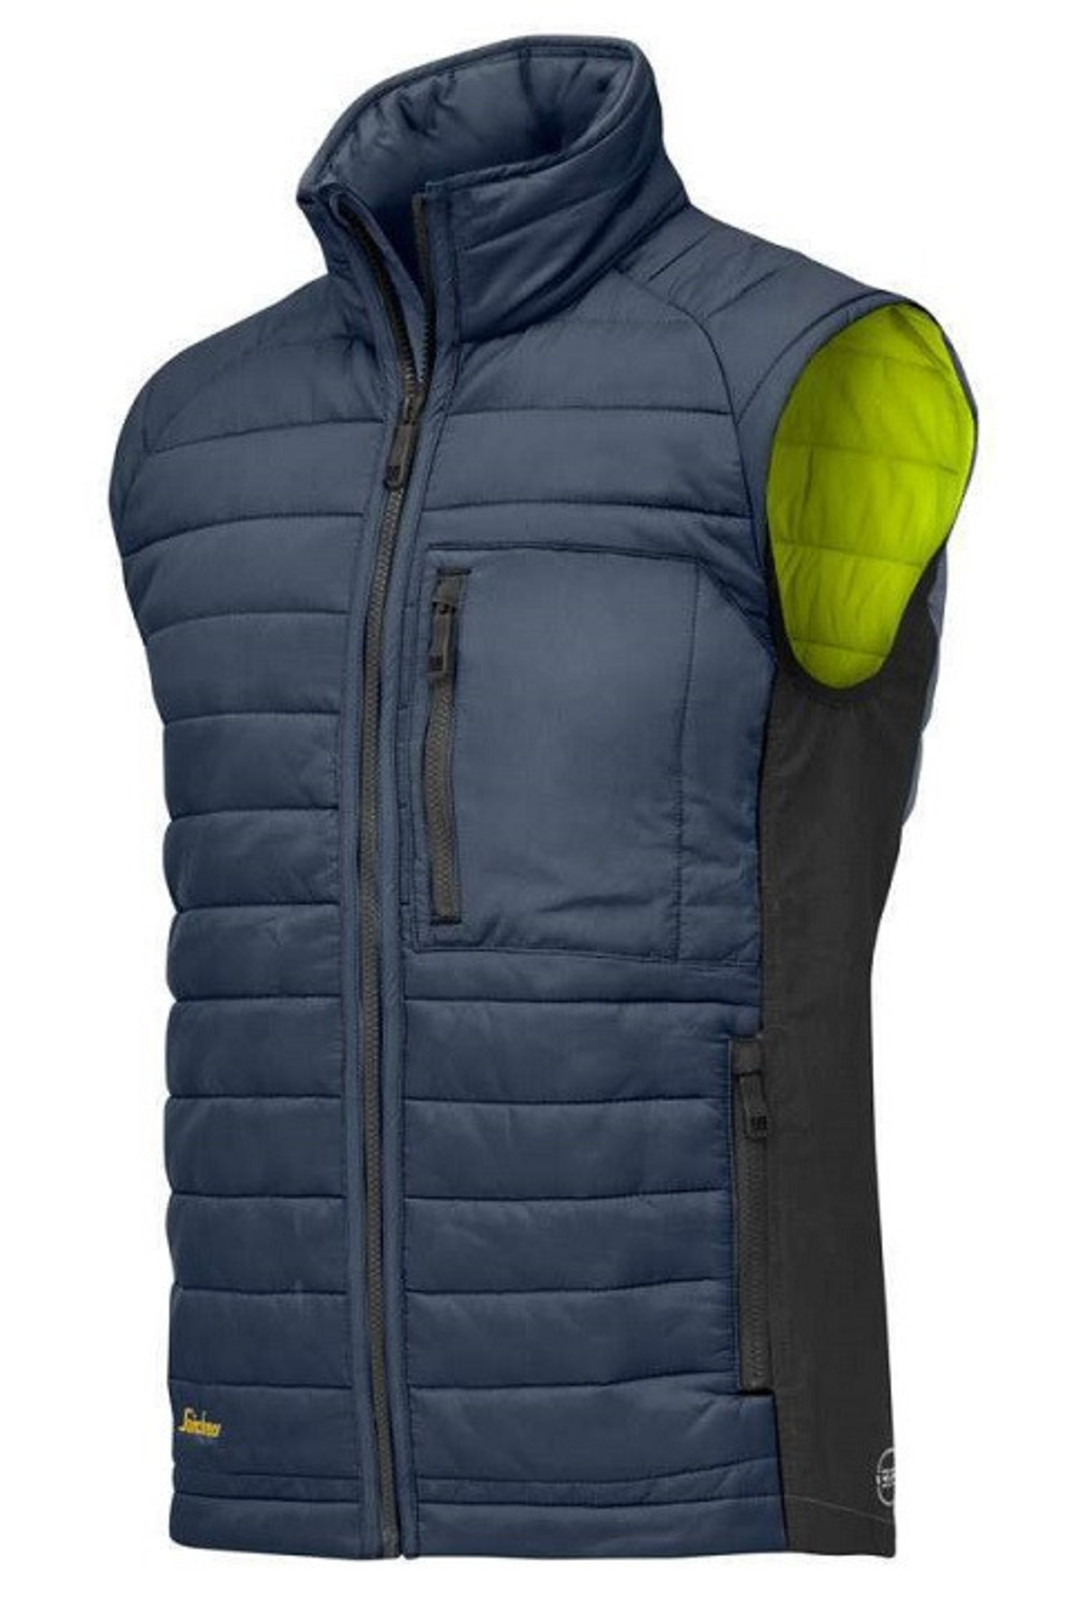 Prešívaná vesta Snickers® AllroundWork 37.5® - veľkosť: 3XL, farba: modrá